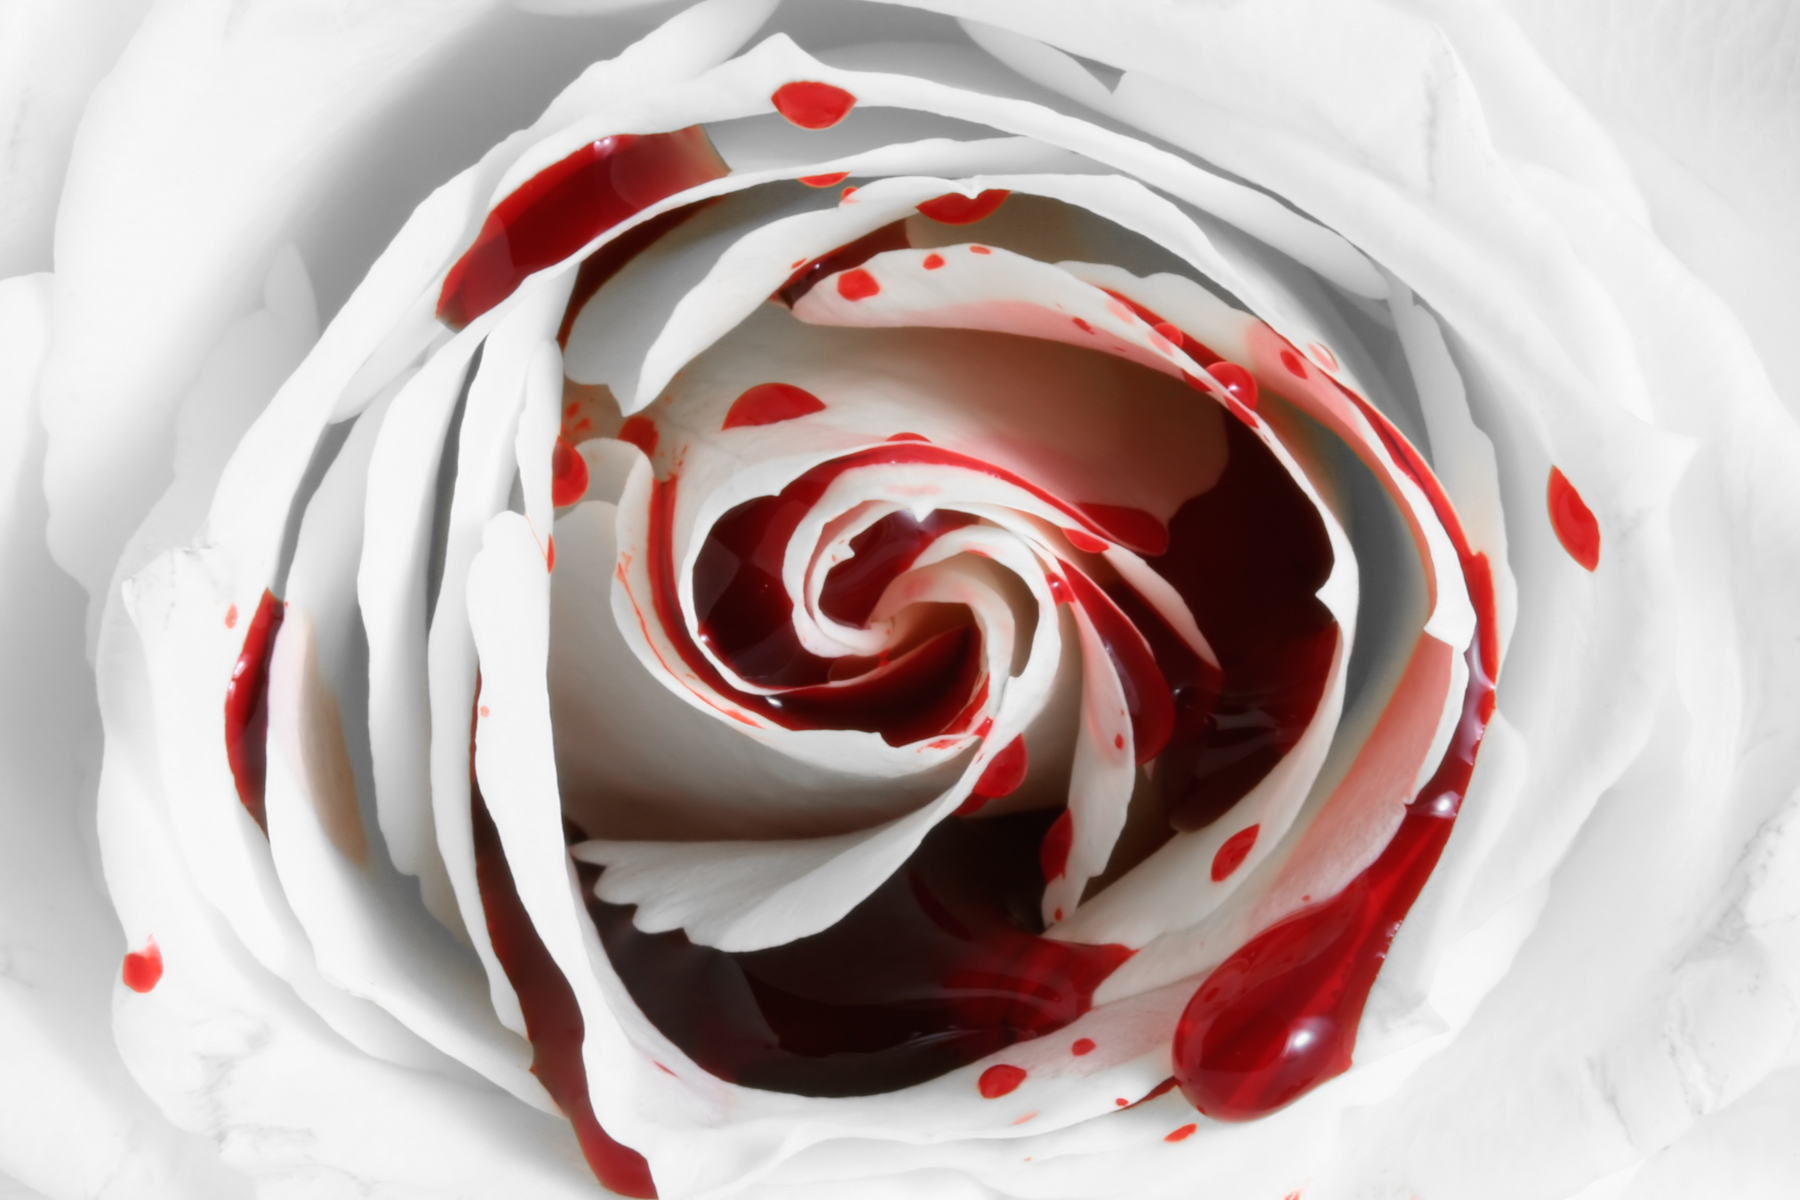 Blood rose macro photo